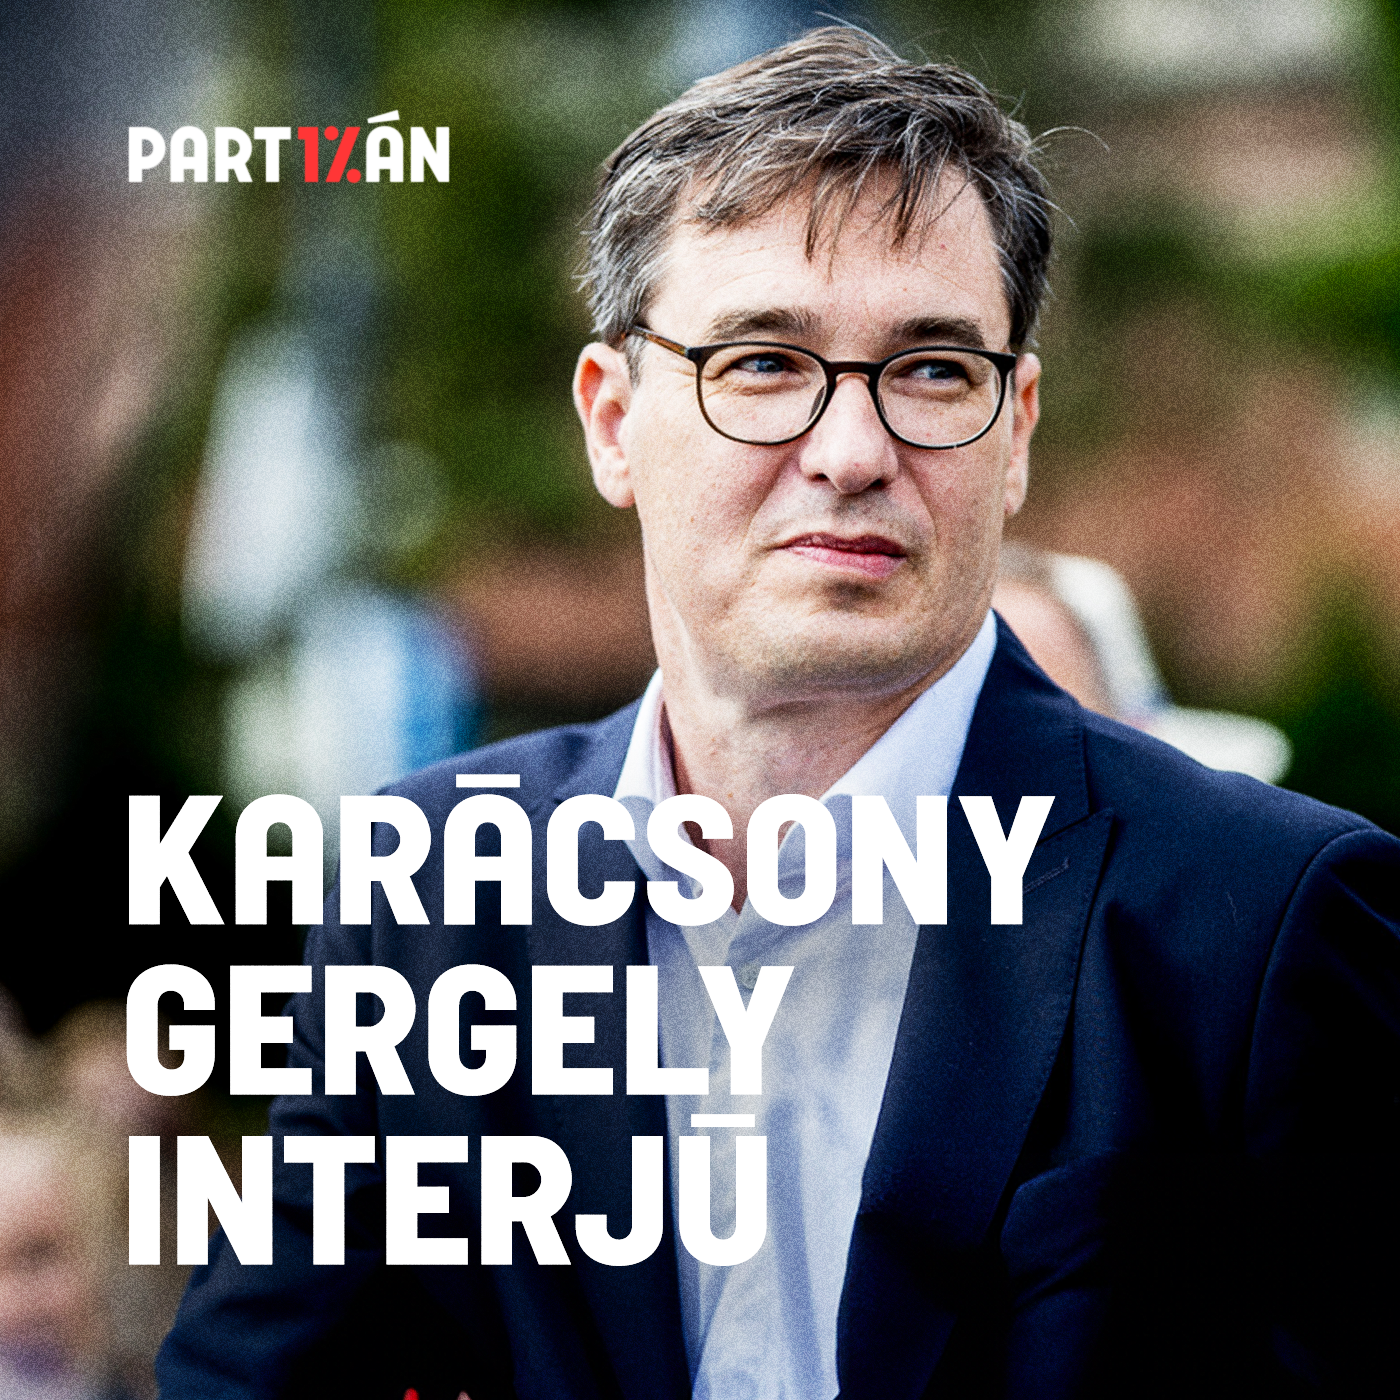 Mi lesz, ha Magyar Péterék is indulnak a budapesti választáson? | Interjú Karácsony Gergellyel